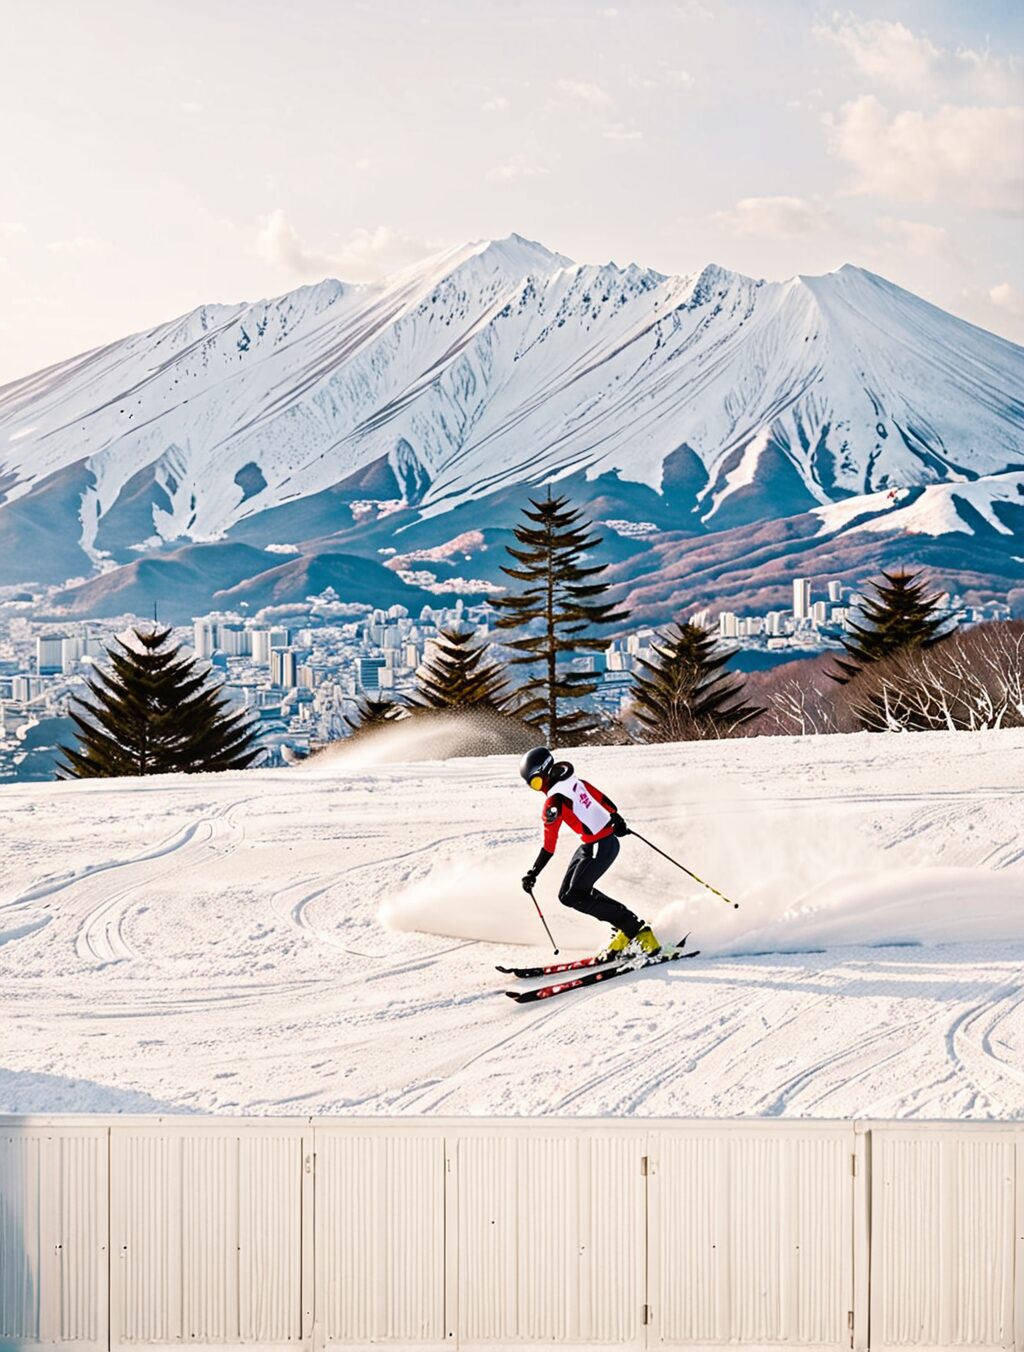 when does ski season finish in japan